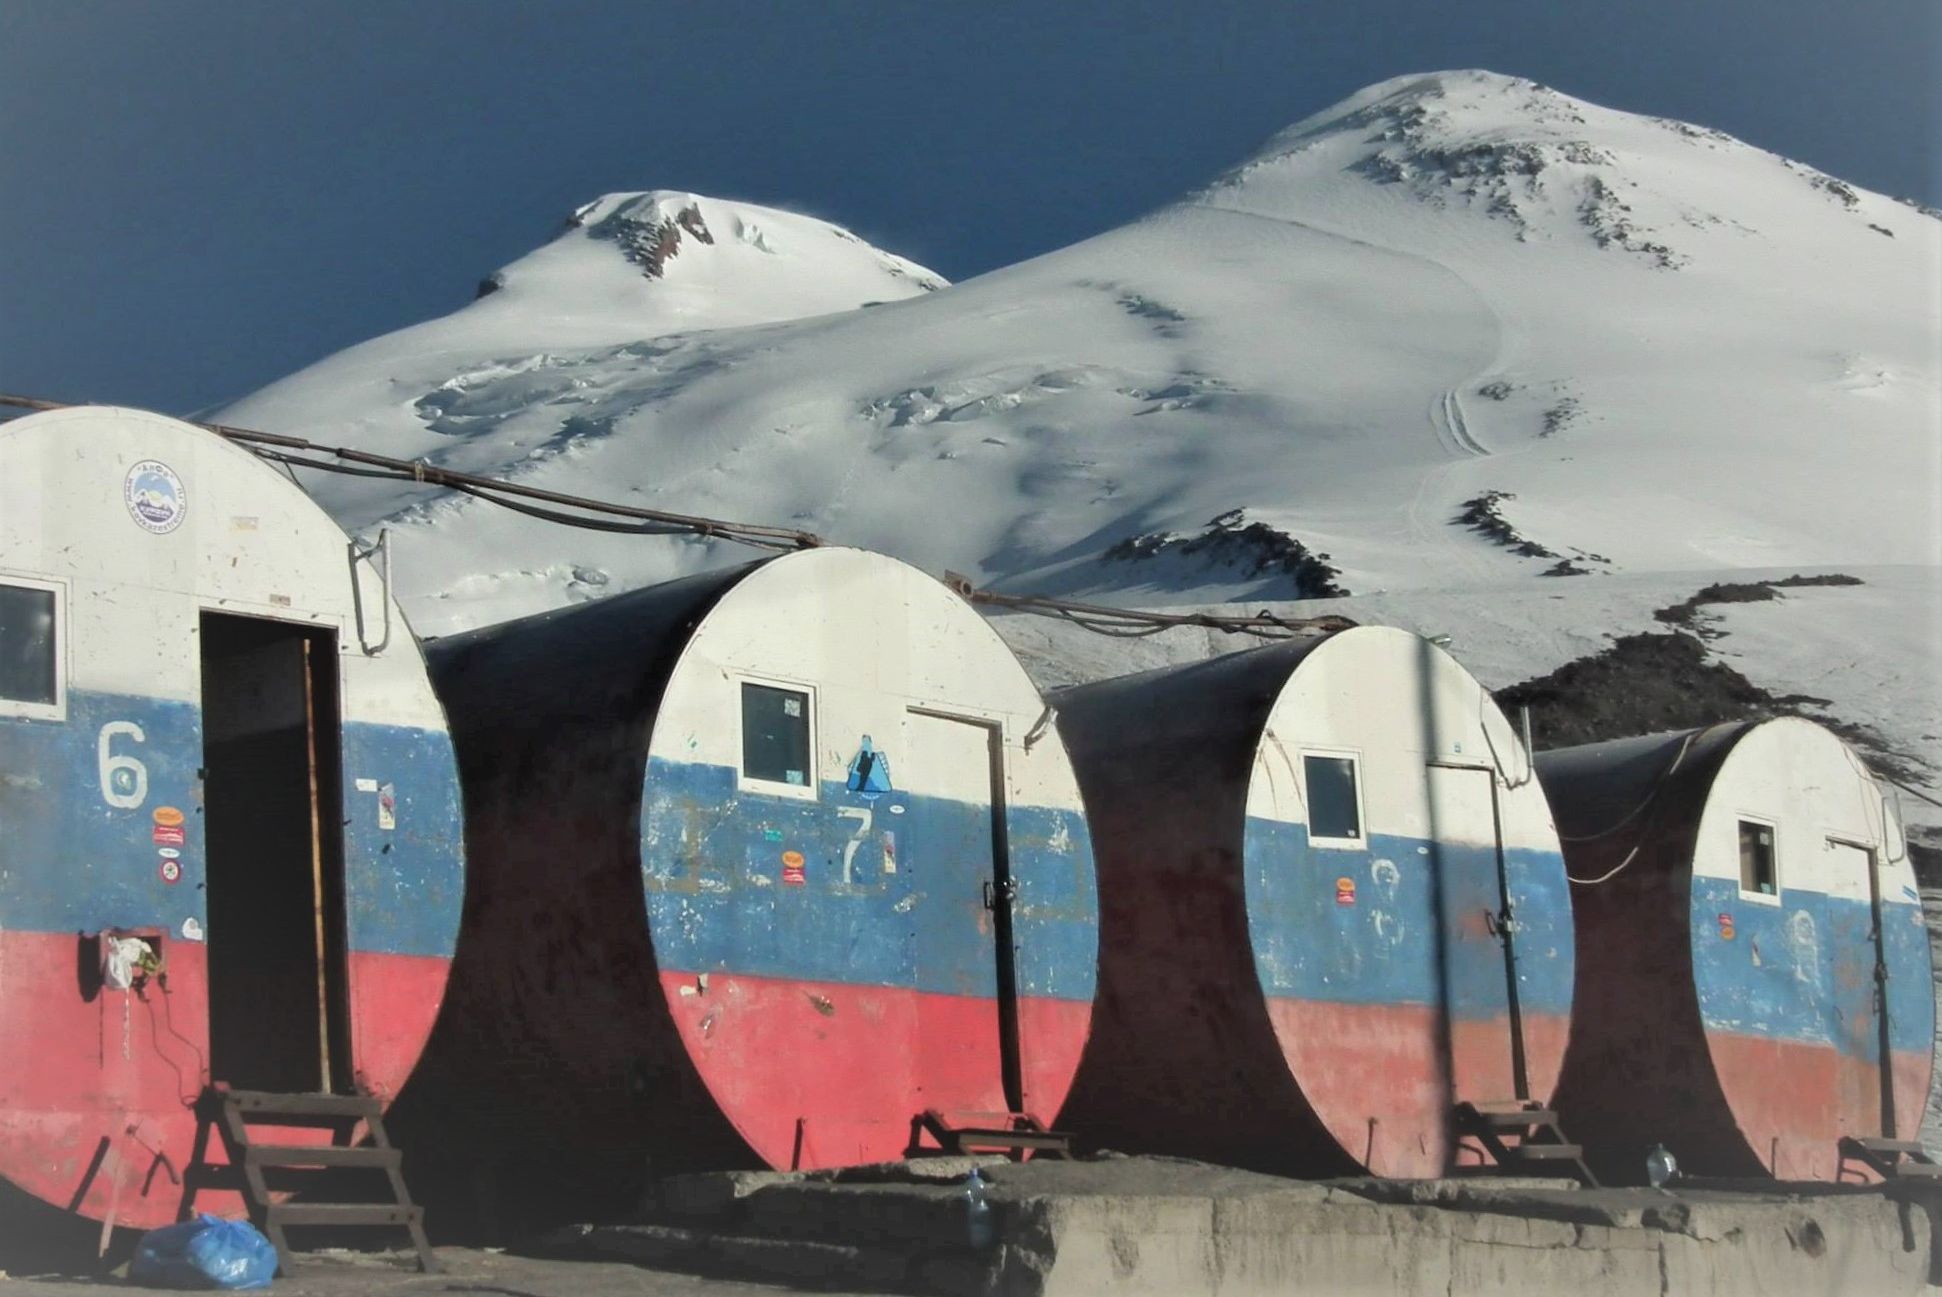 Refuge on Mount Elbrus in the Caucasus